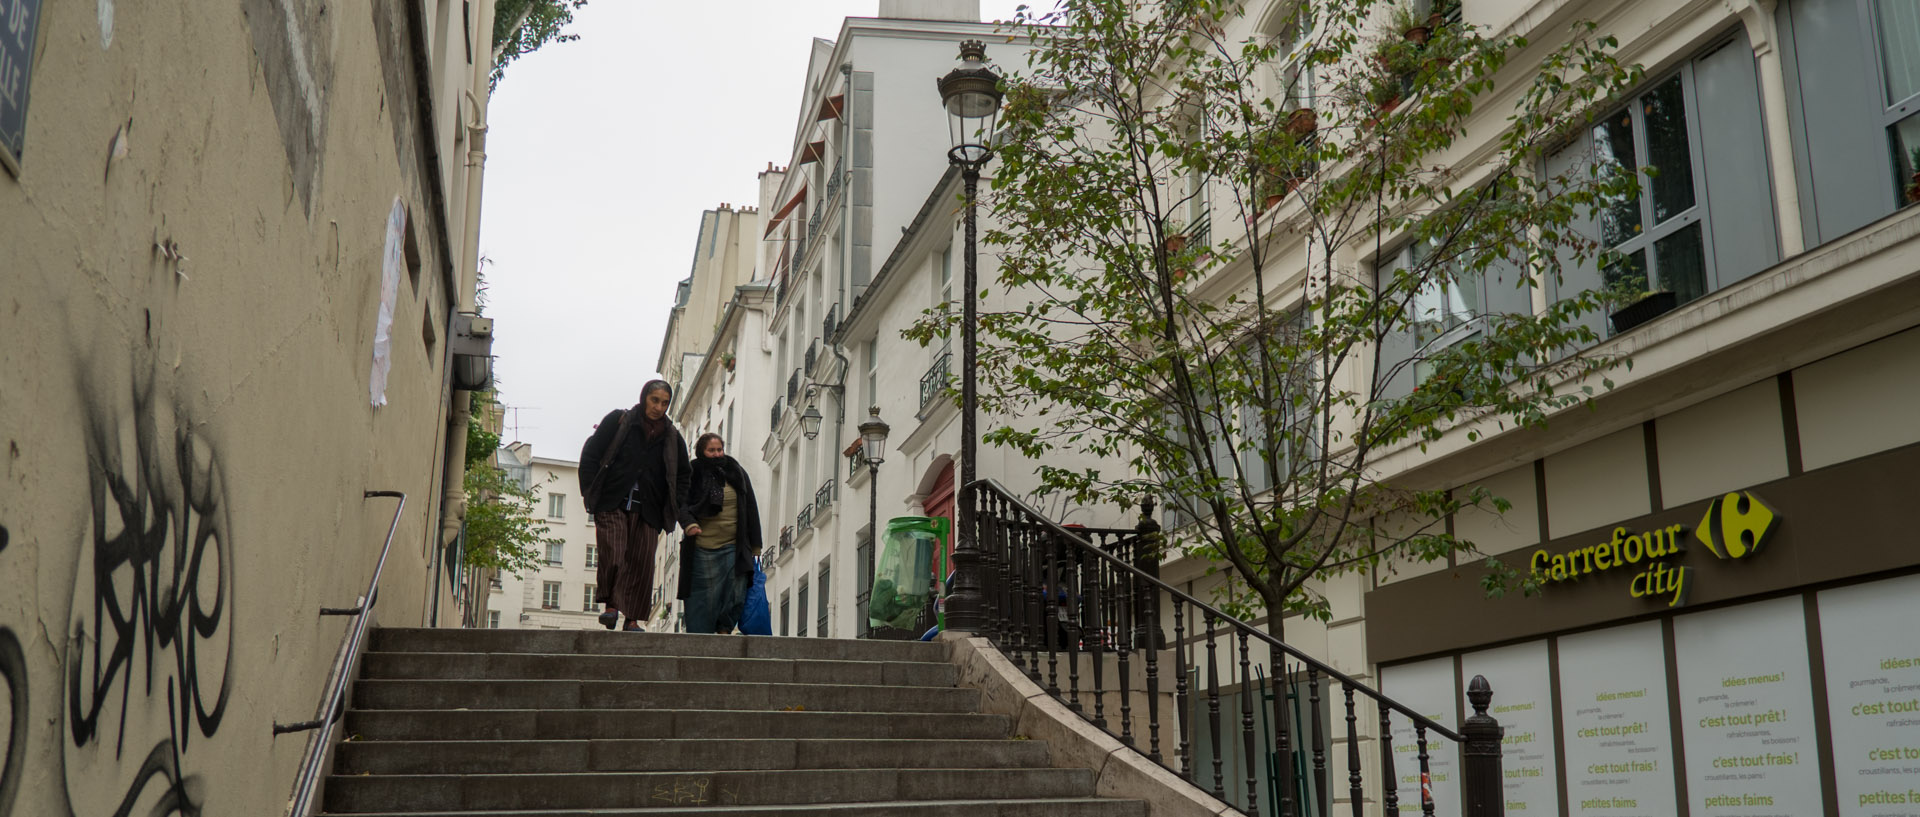 Deux femmes passant le long d'un Carrefour city, rue Notre-Dame de Bonne Nouvelle, à Paris.